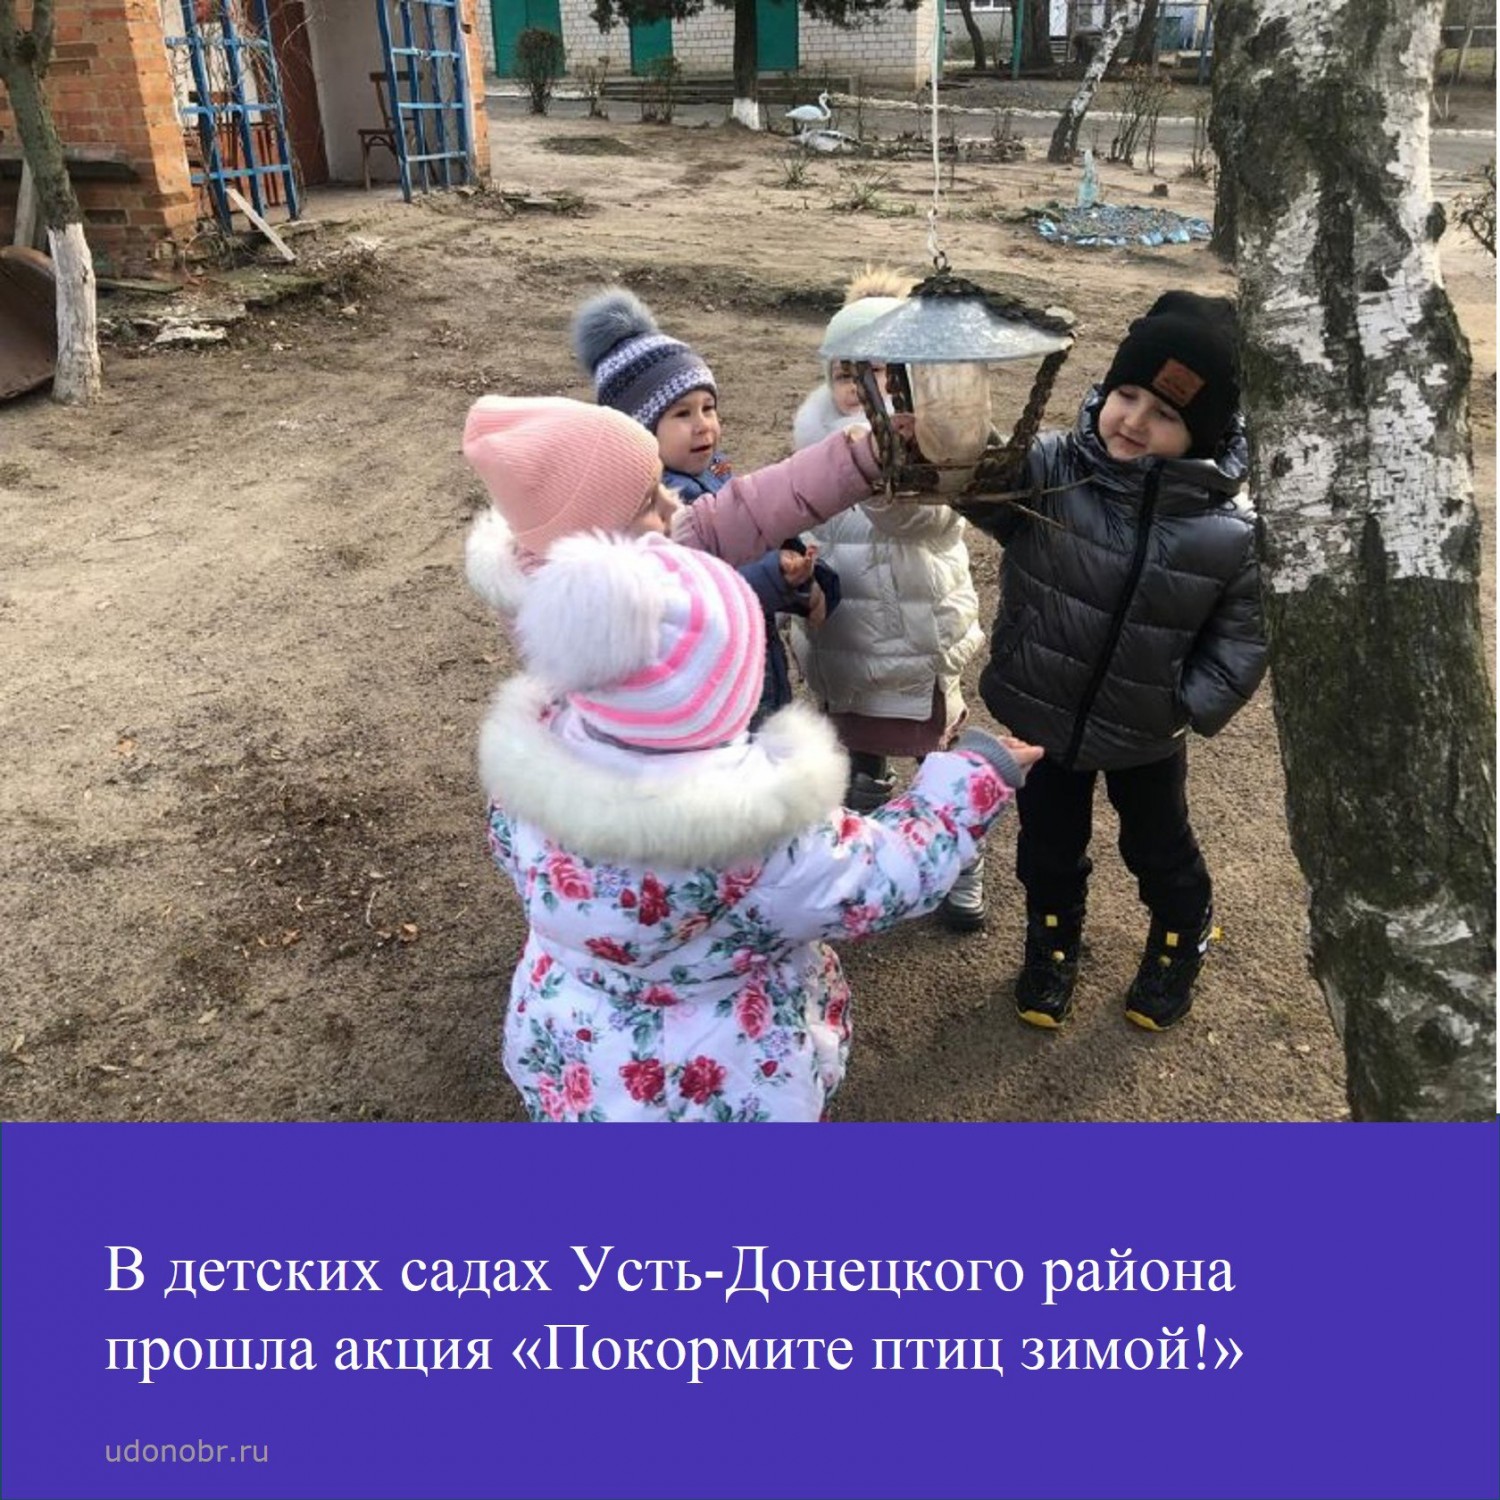 В детских садах Усть-Донецкого района прошла акция «Покормите птиц зимой!»